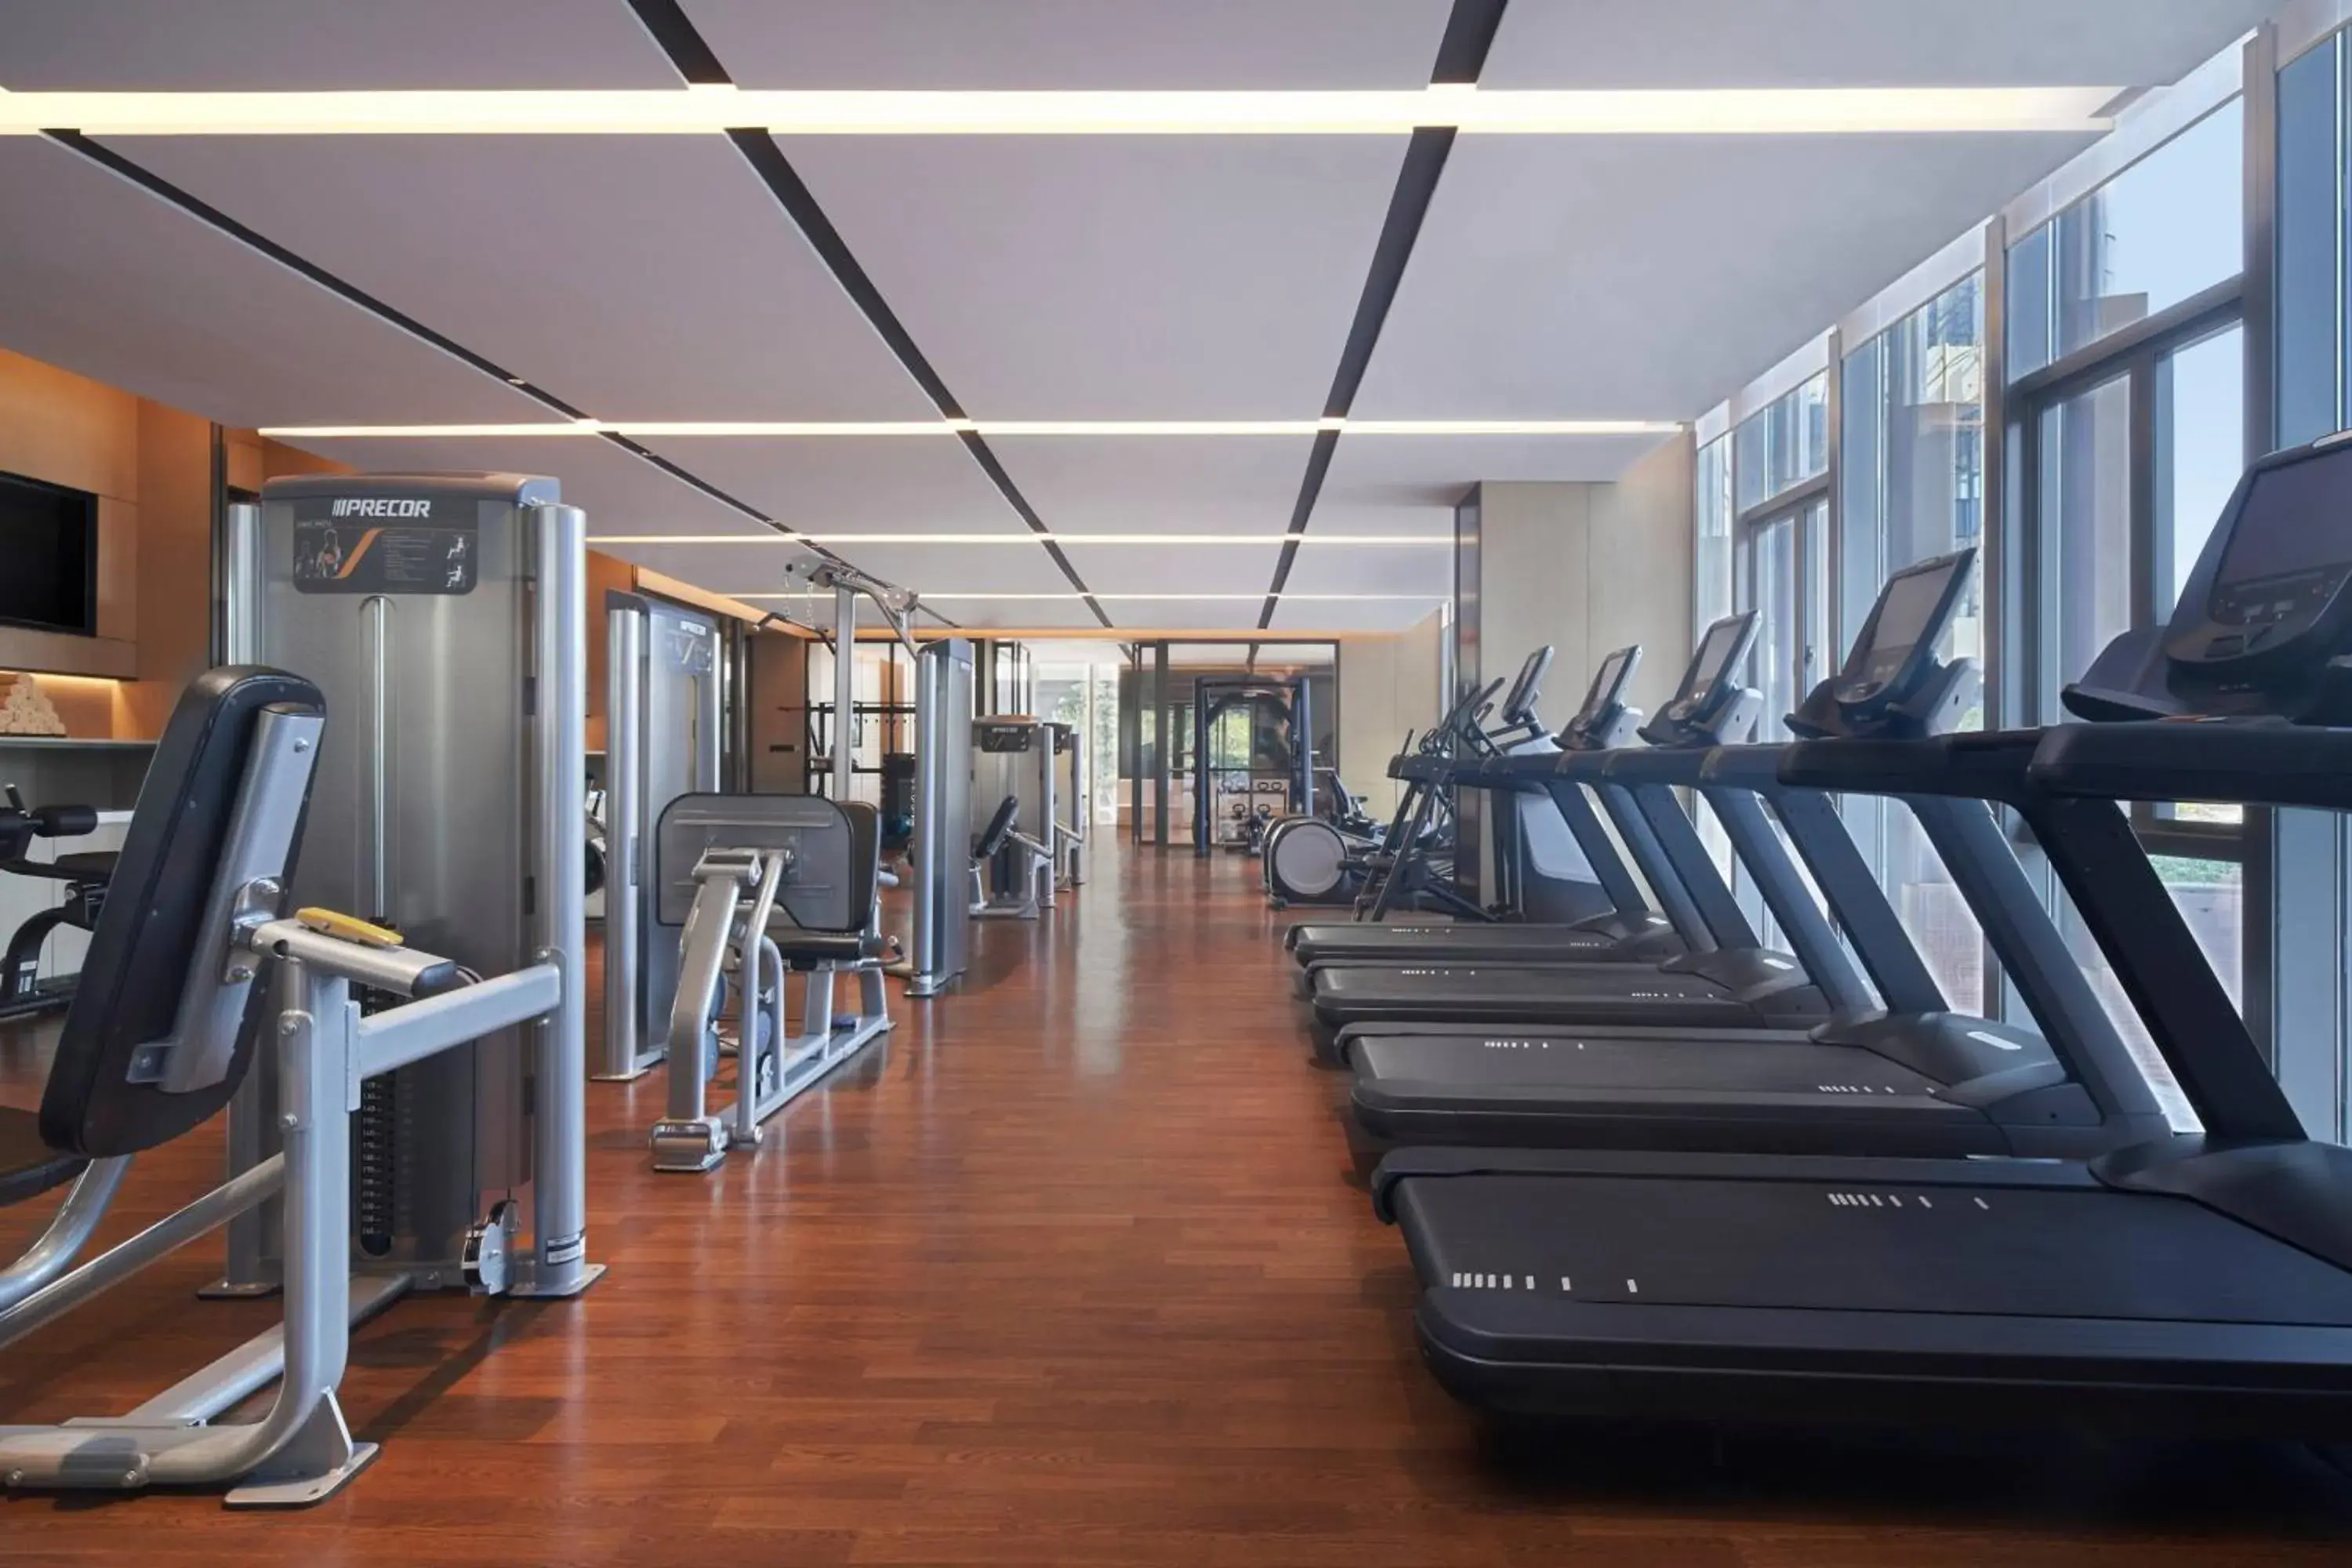 Fitness centre/facilities, Fitness Center/Facilities in Fuzhou Marriott Hotel Riverside